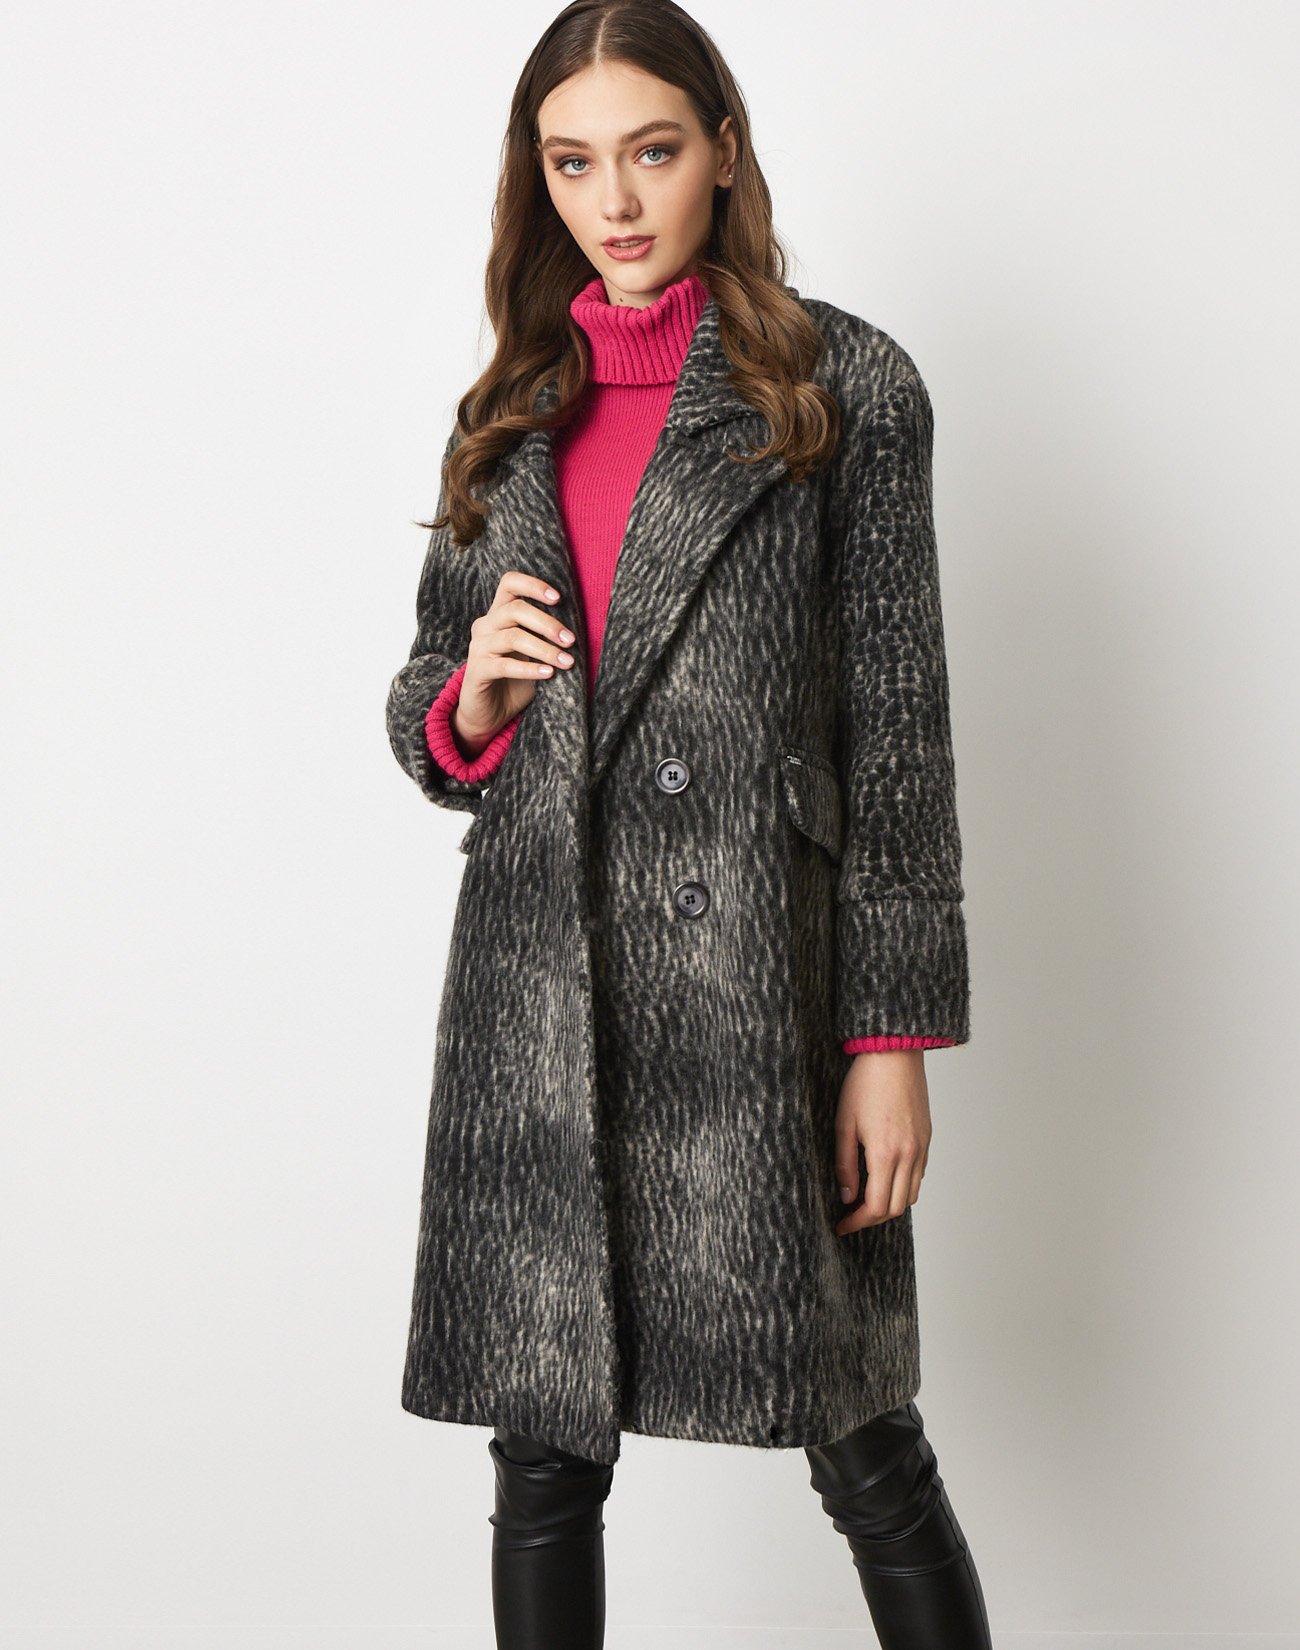 Wool blend printed coat